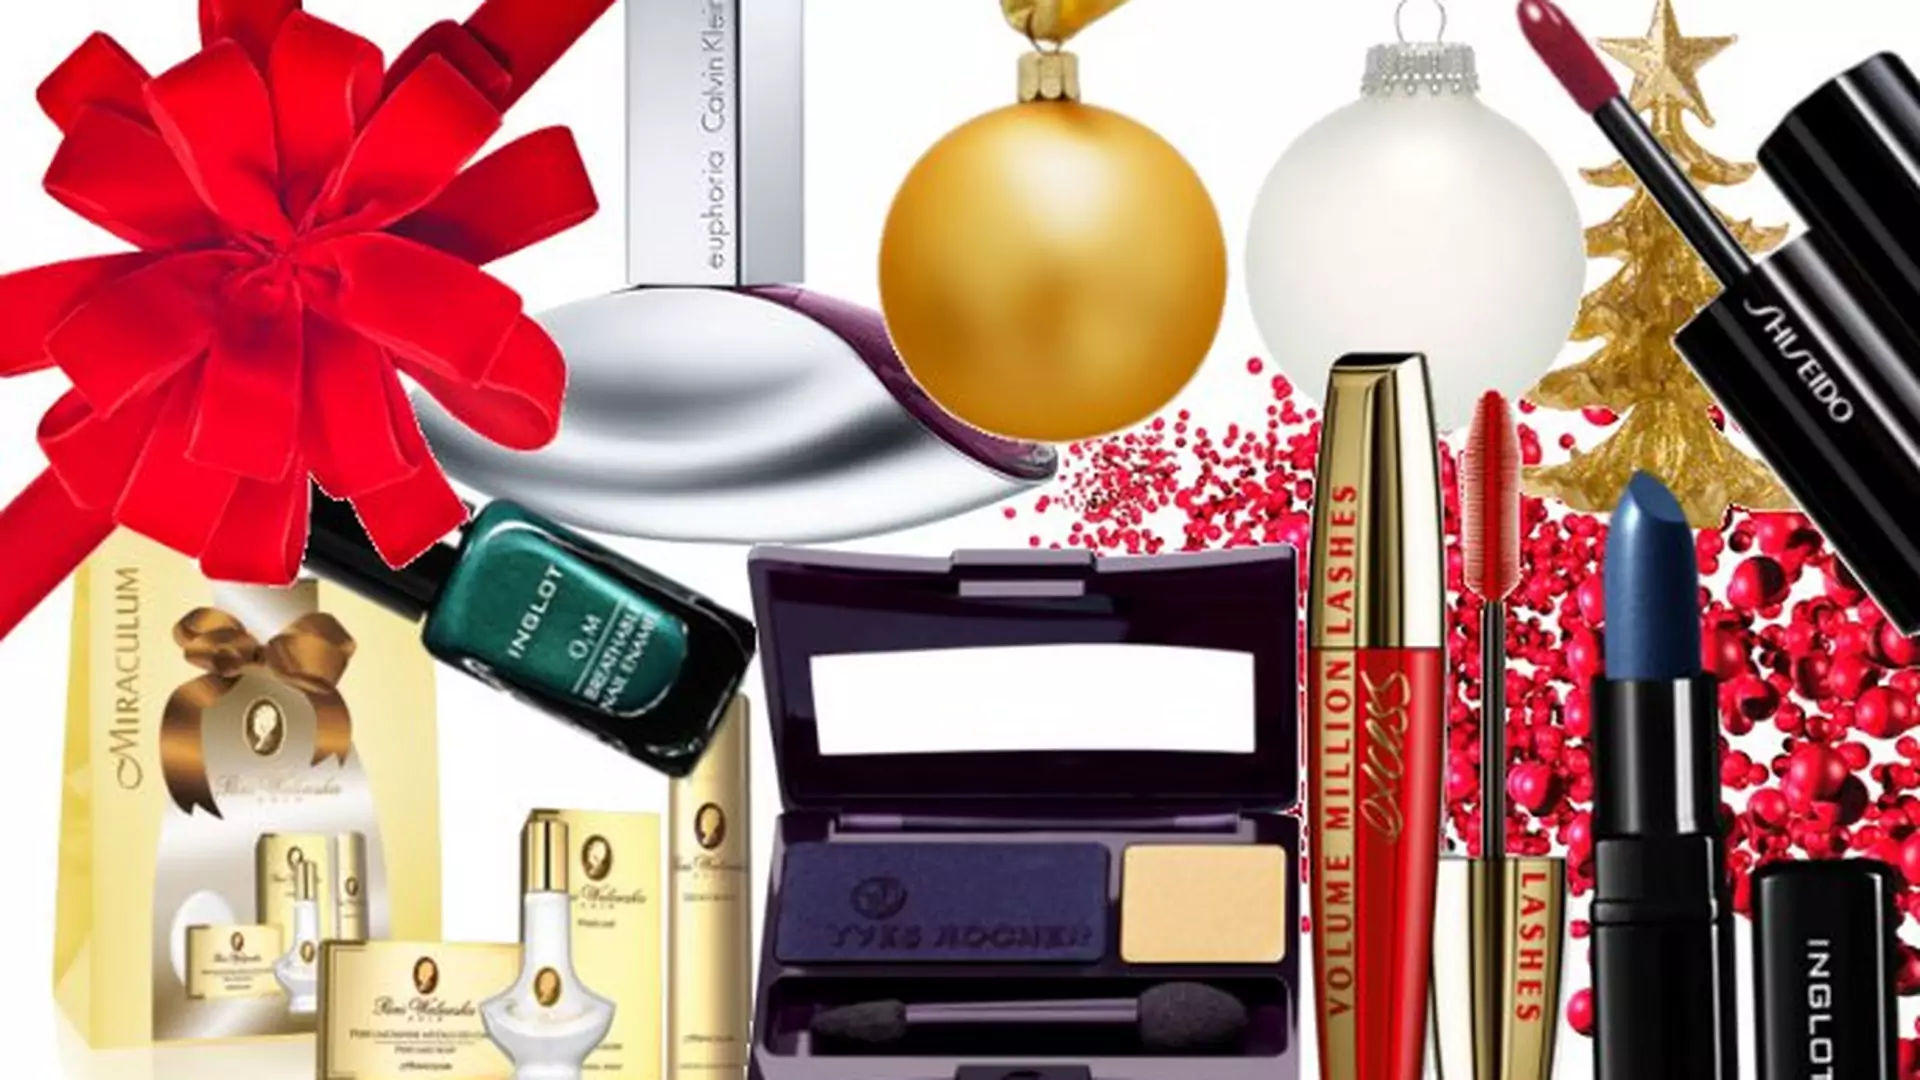 Czerwień, złoto, zieleń, srebro, granat - kolory świąt w... kosmetykach